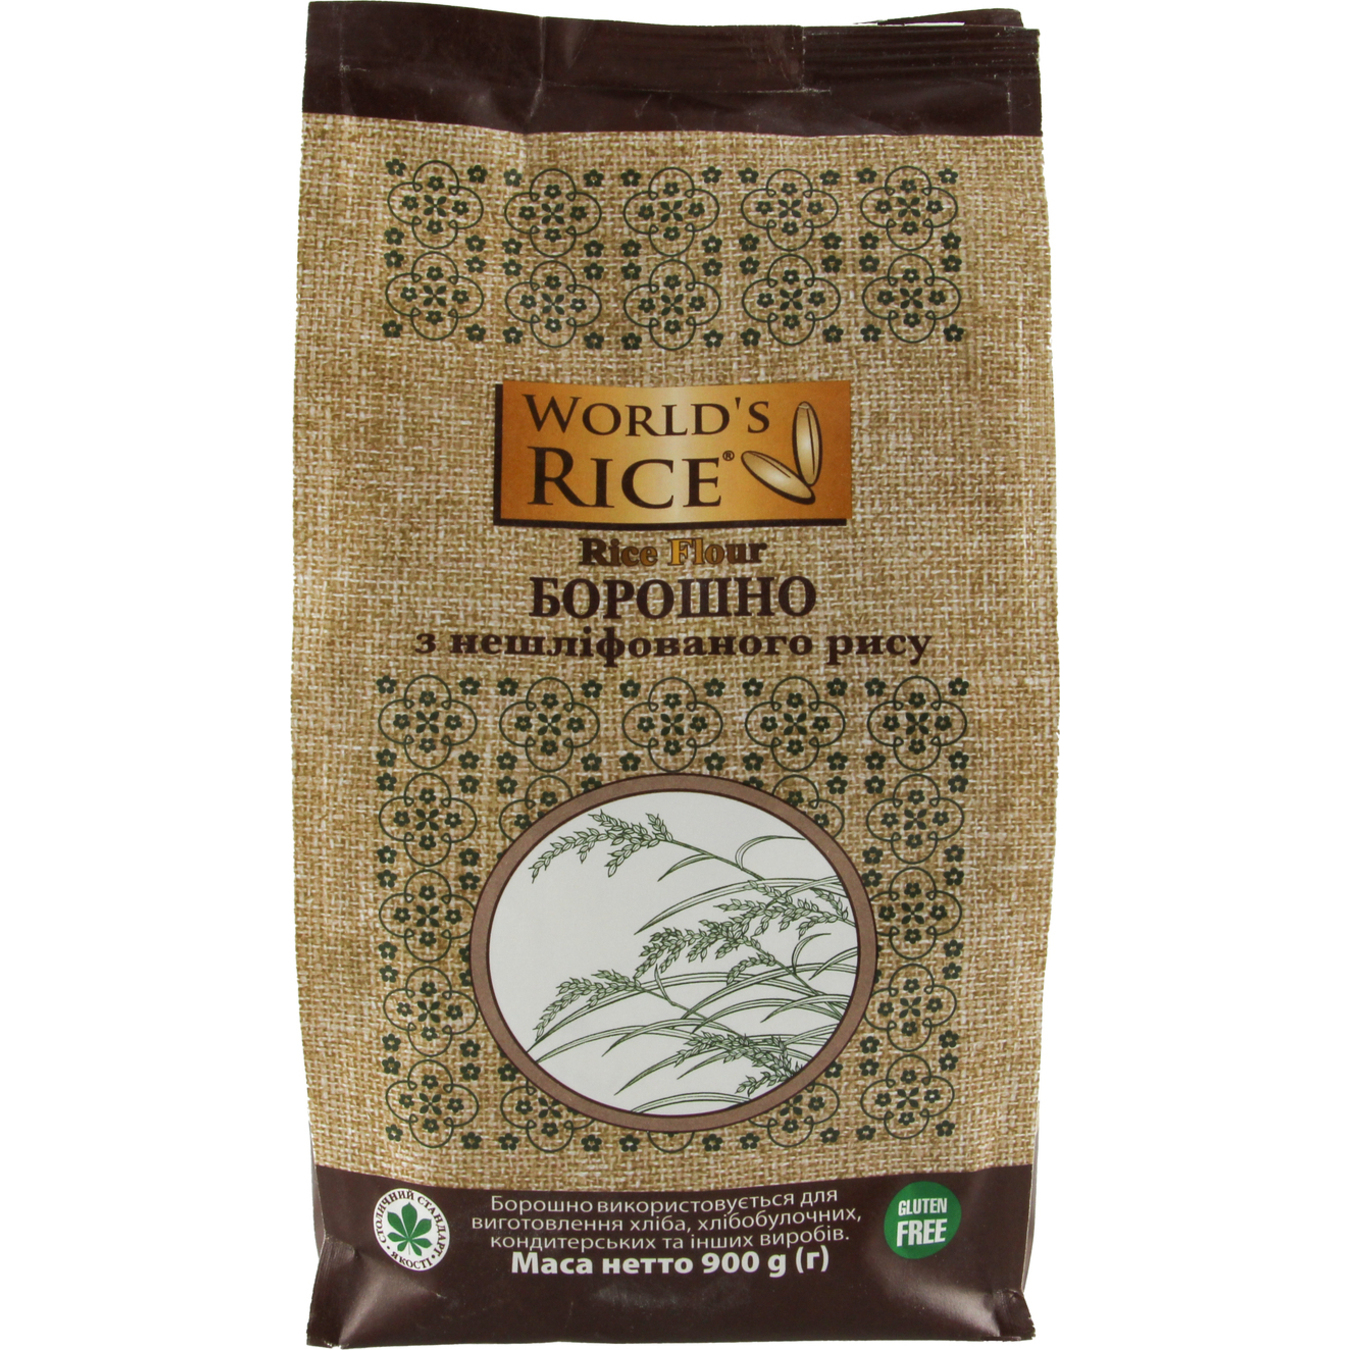 Мука World`s rice из нешлифованного риса 0,9 кг